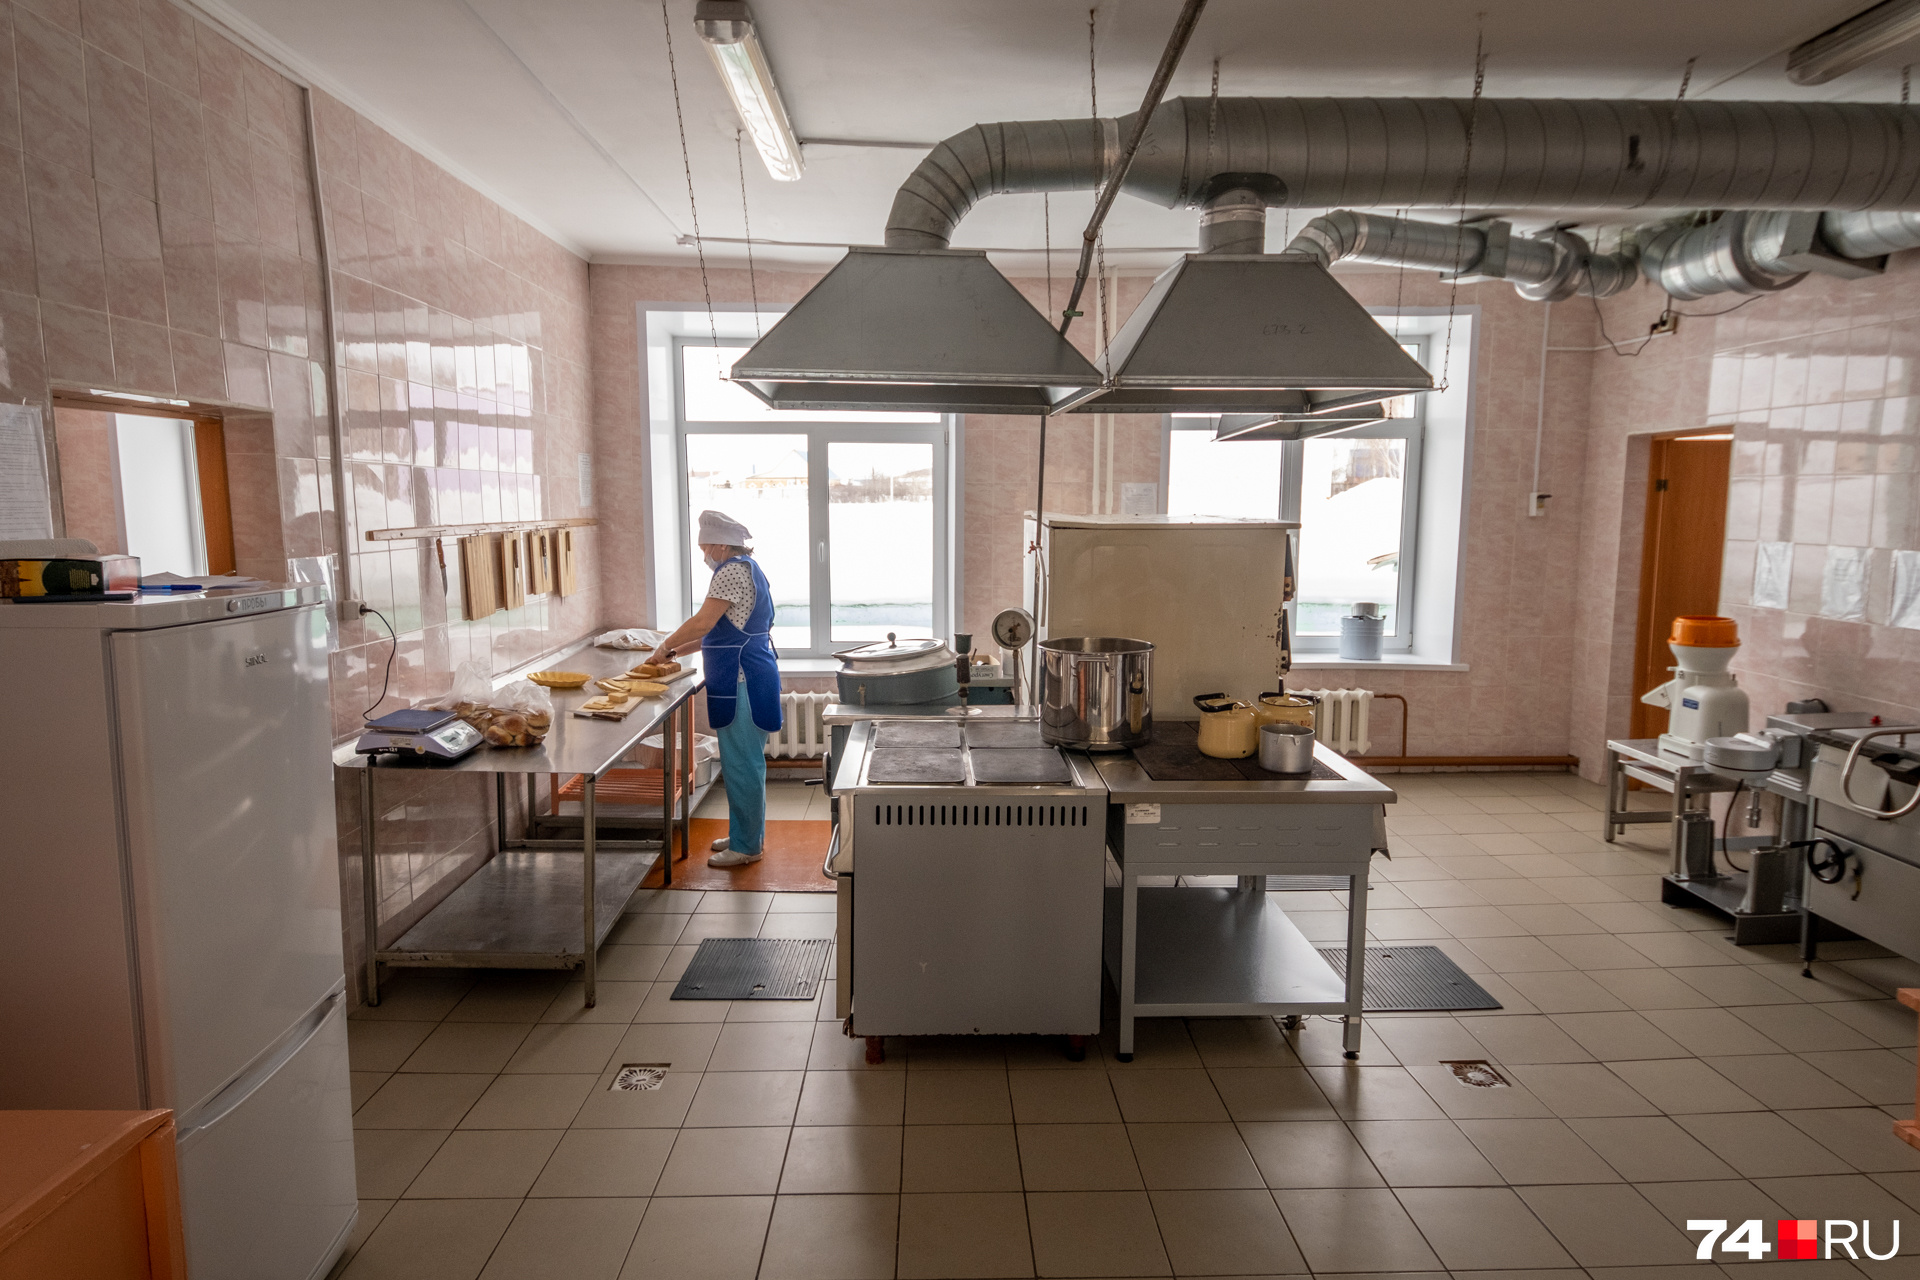 Кемеровские повара научат кузбасских коллег работе на новом оборудовании